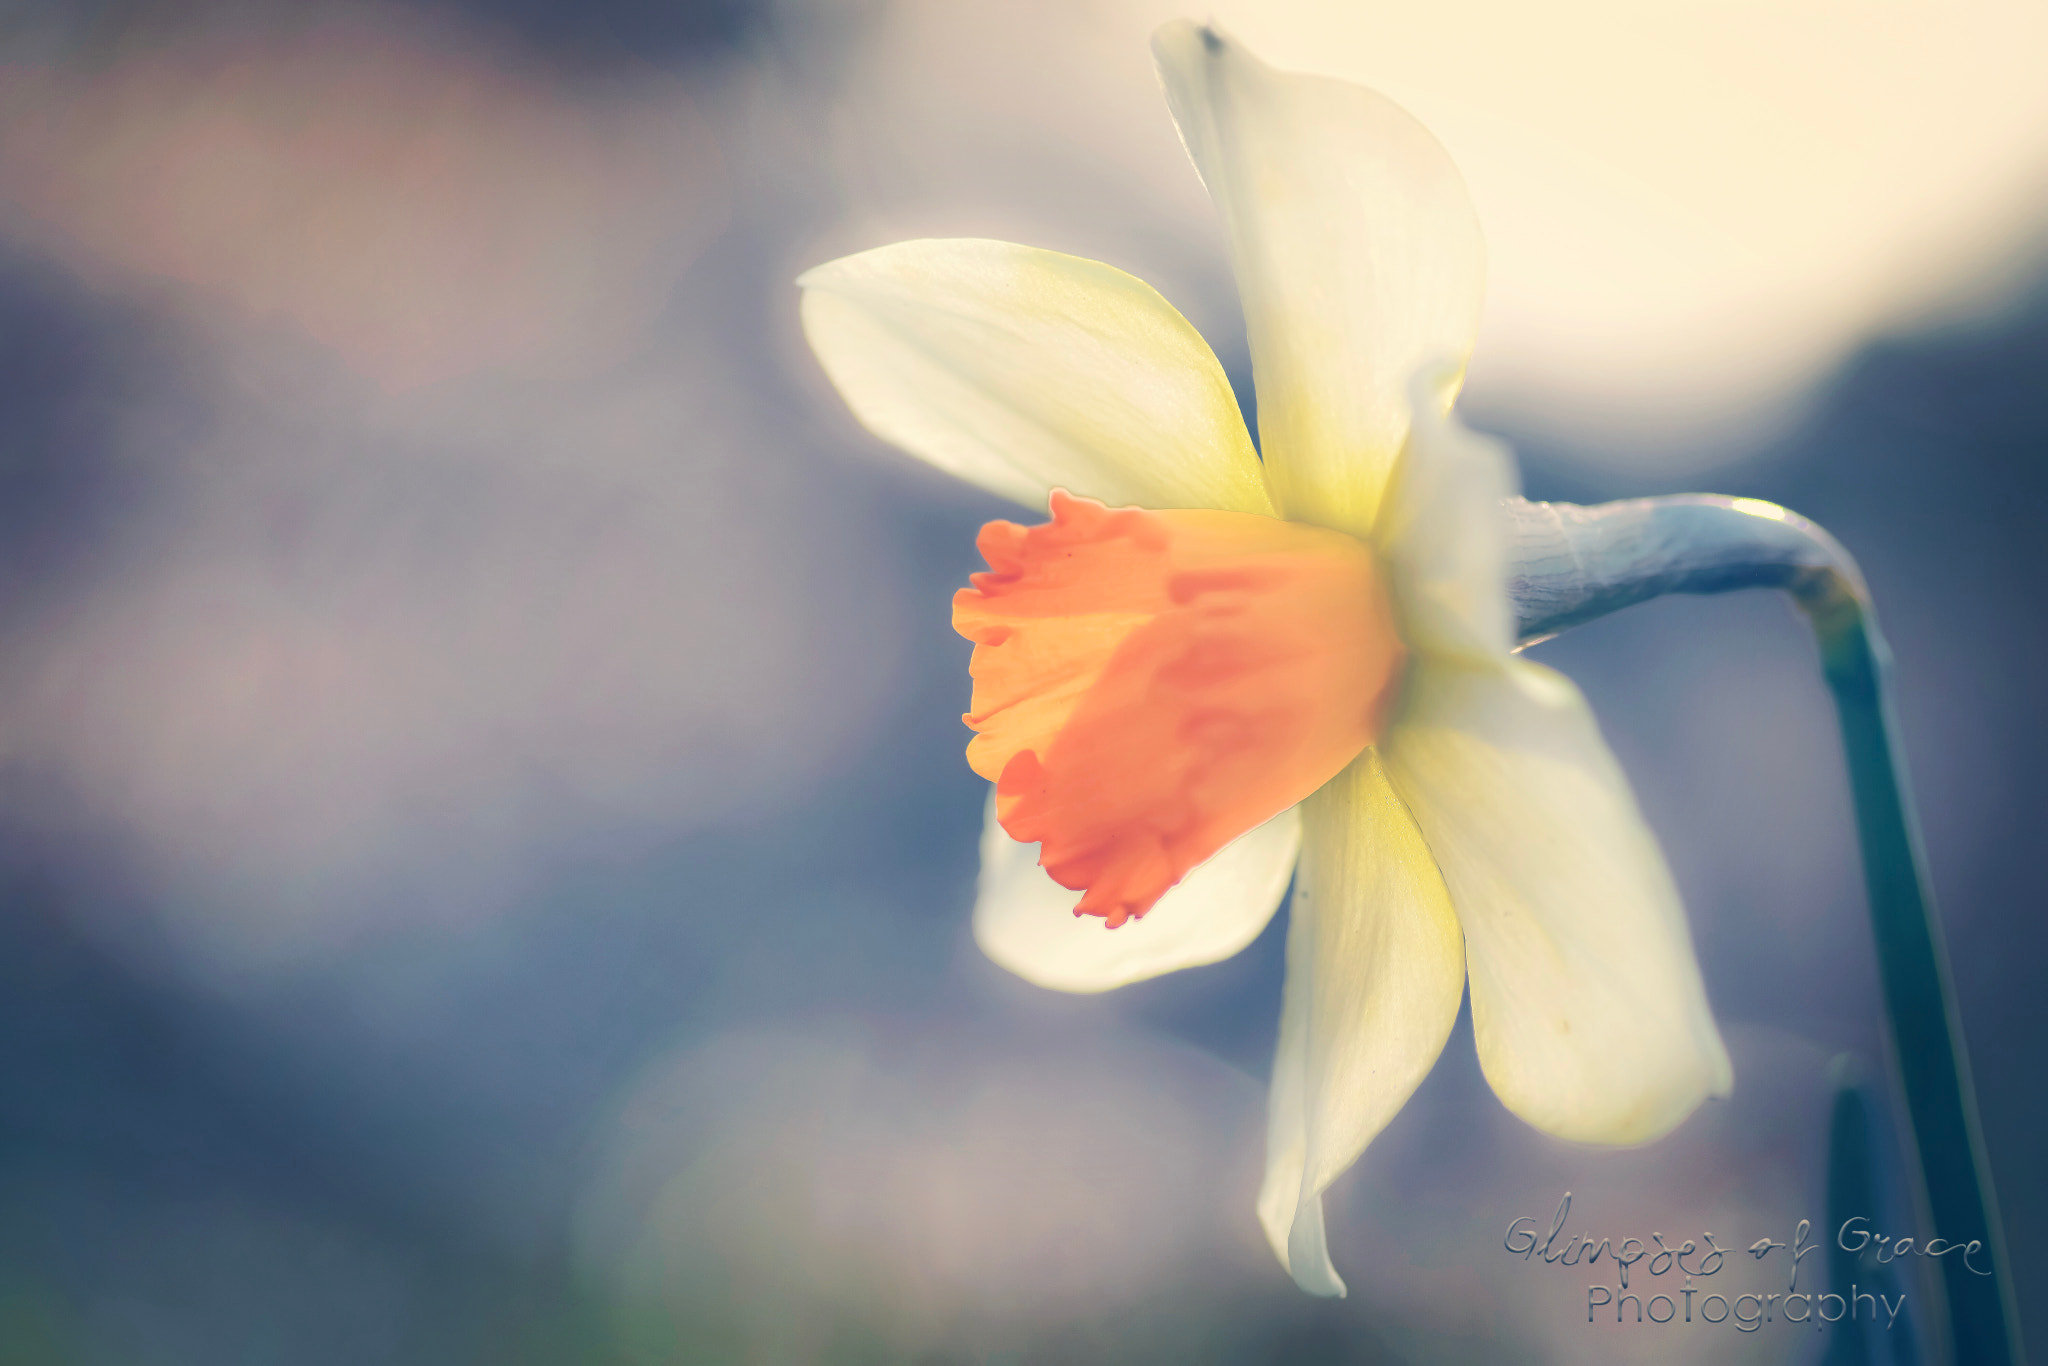 Nikon D7200 sample photo. Daffodil captured in evening sun. photography